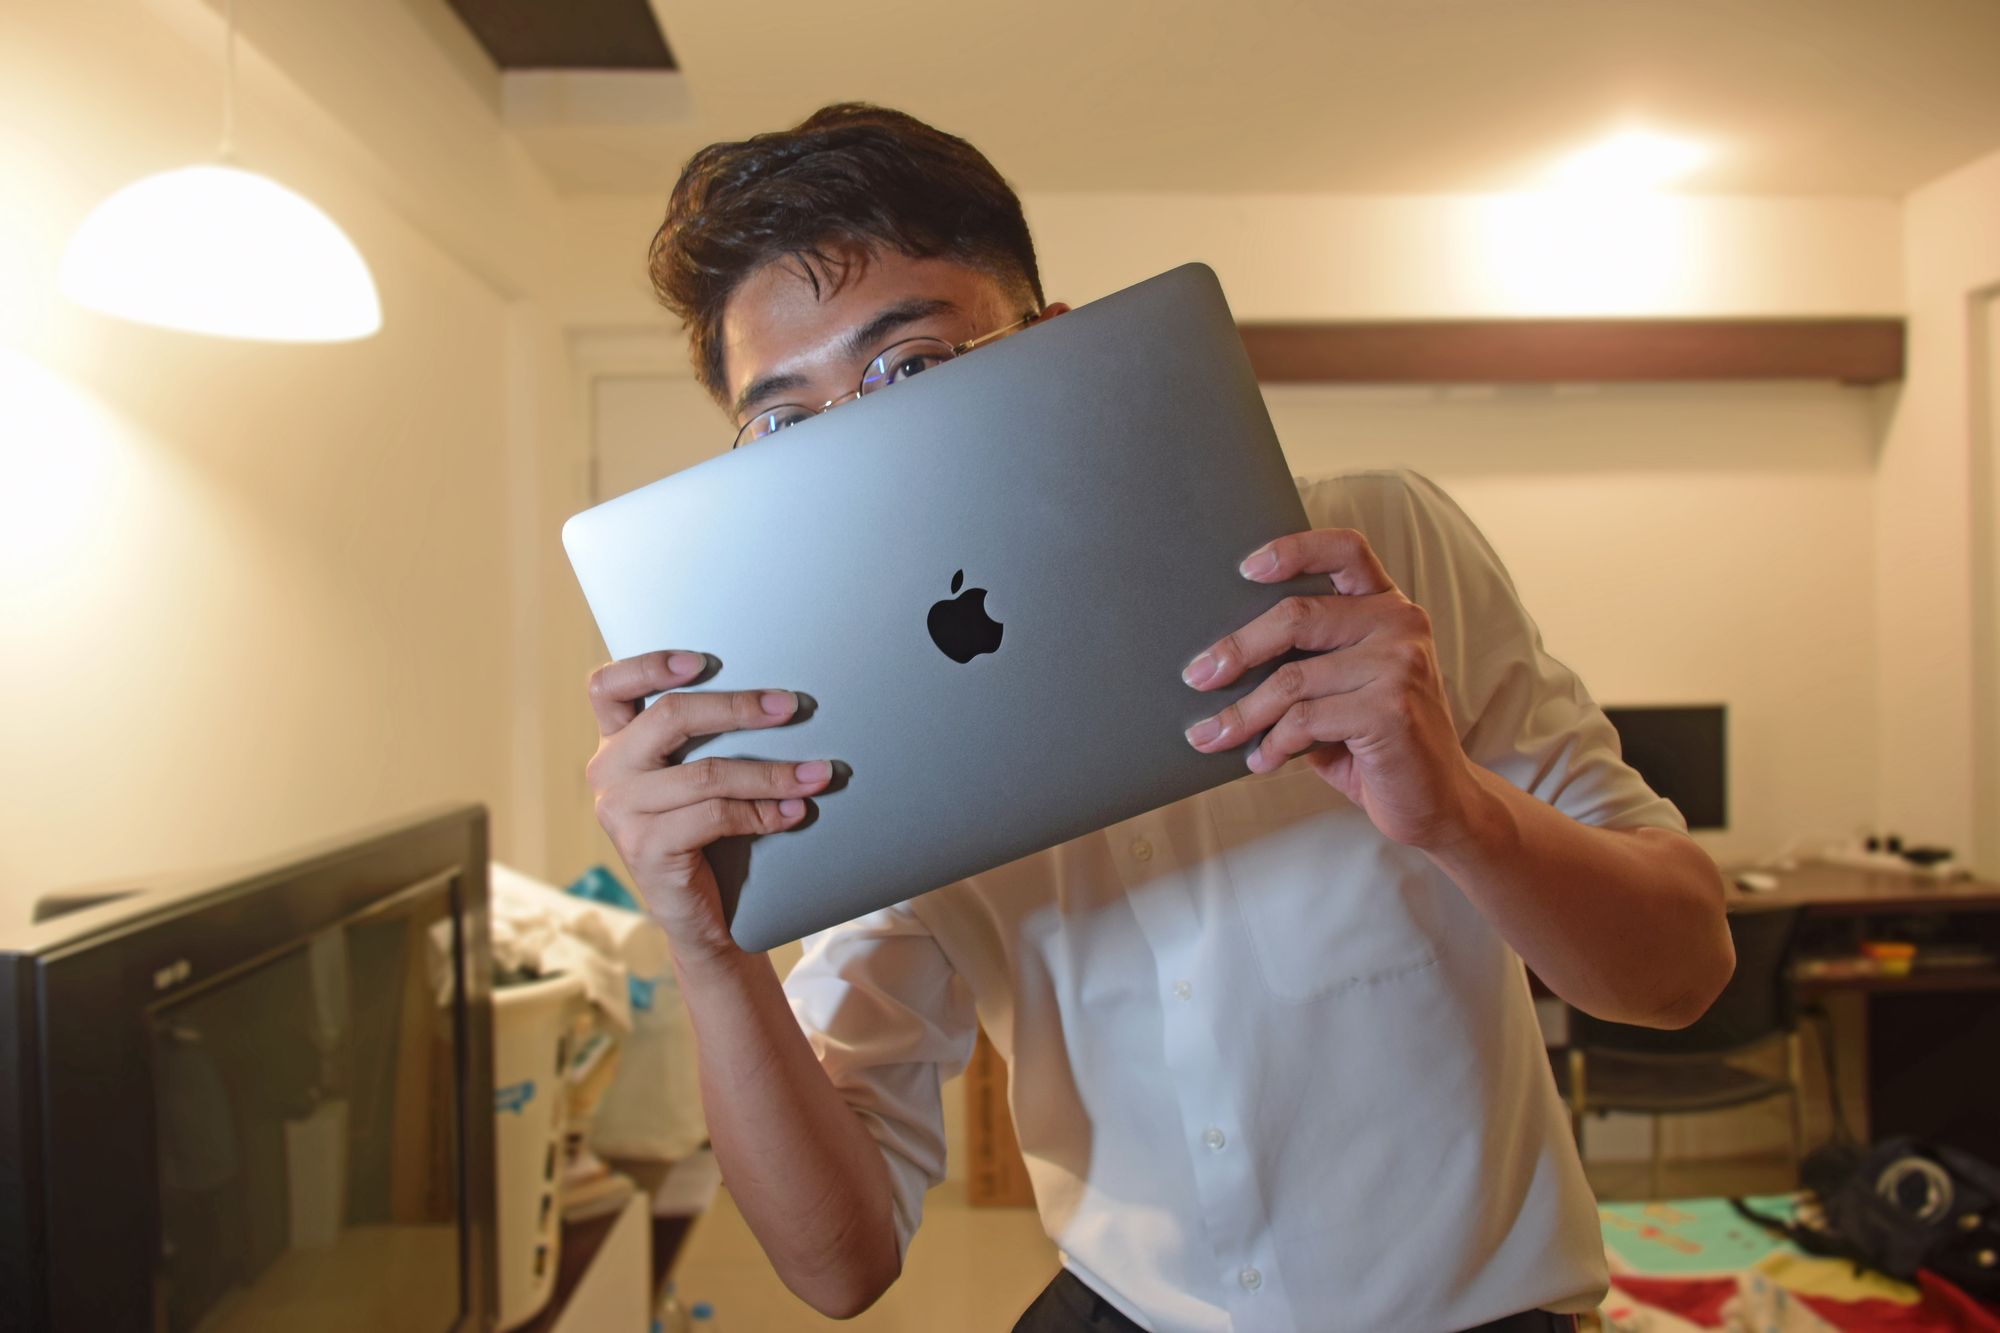 รีวิว MacBook Pro 13 นิ้ว 2018 ที่สมกับ Pro สักที